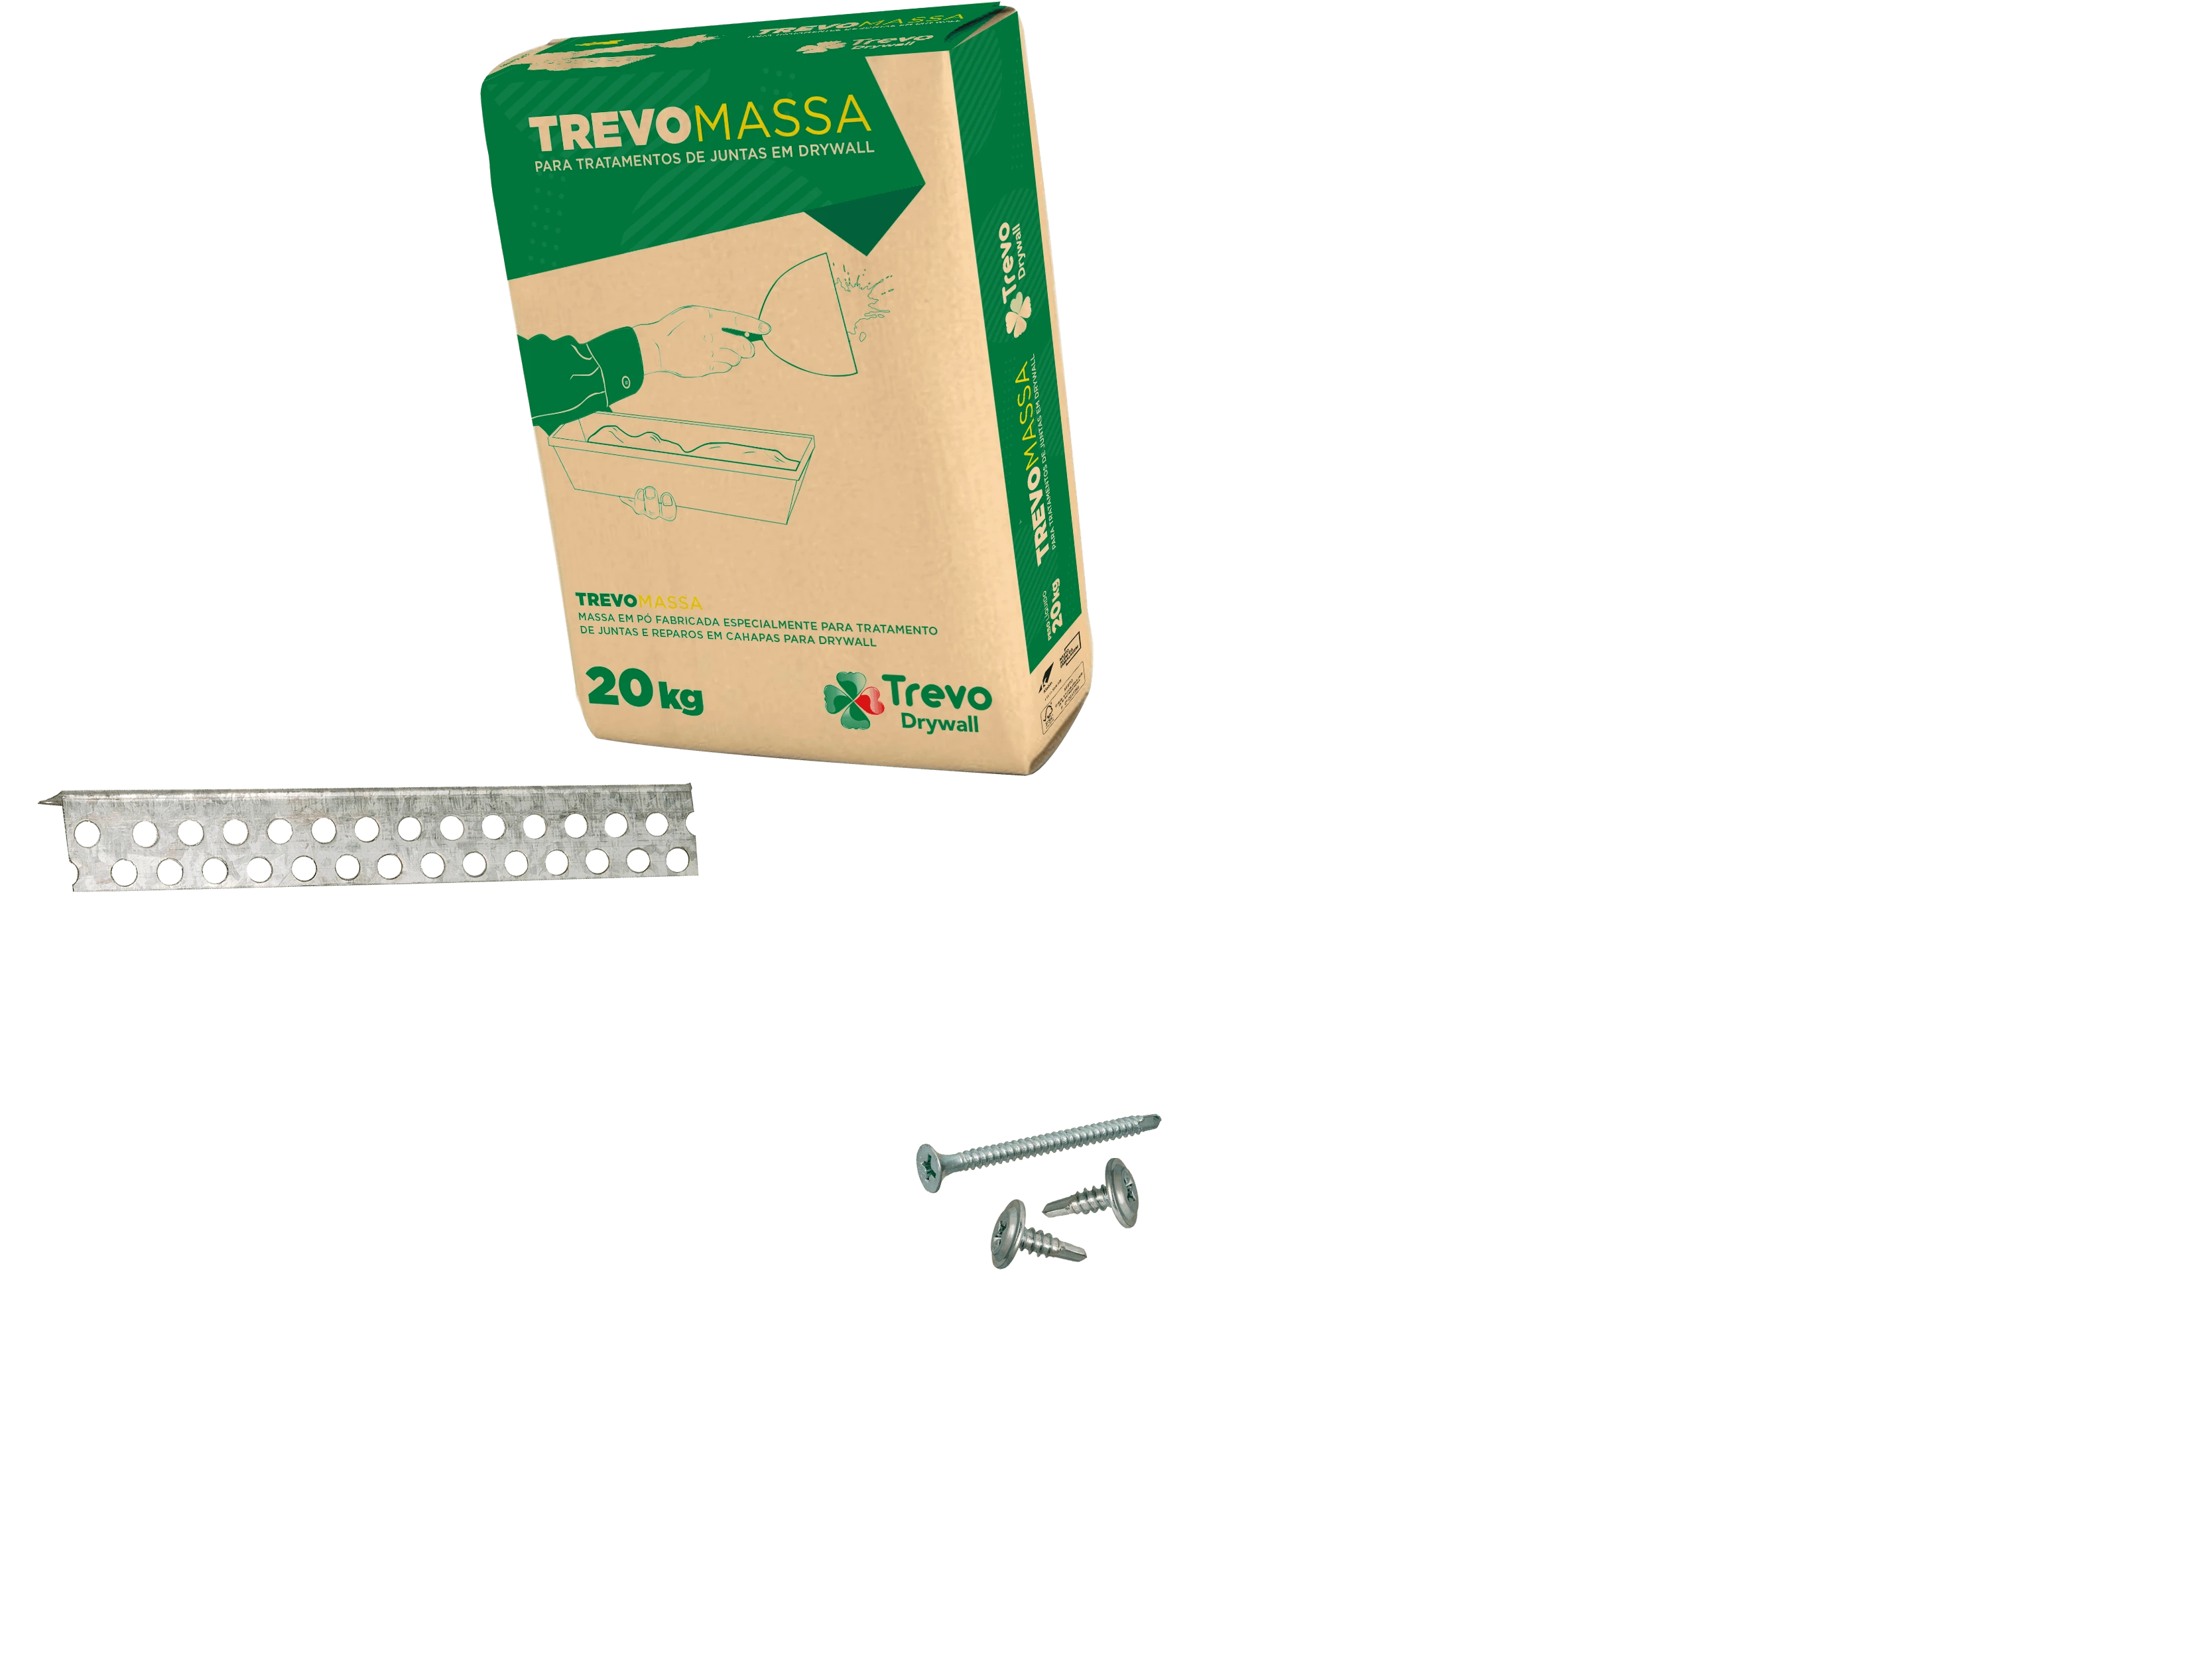 Imagens Ilustrativas dos produtos Trevo Drywall